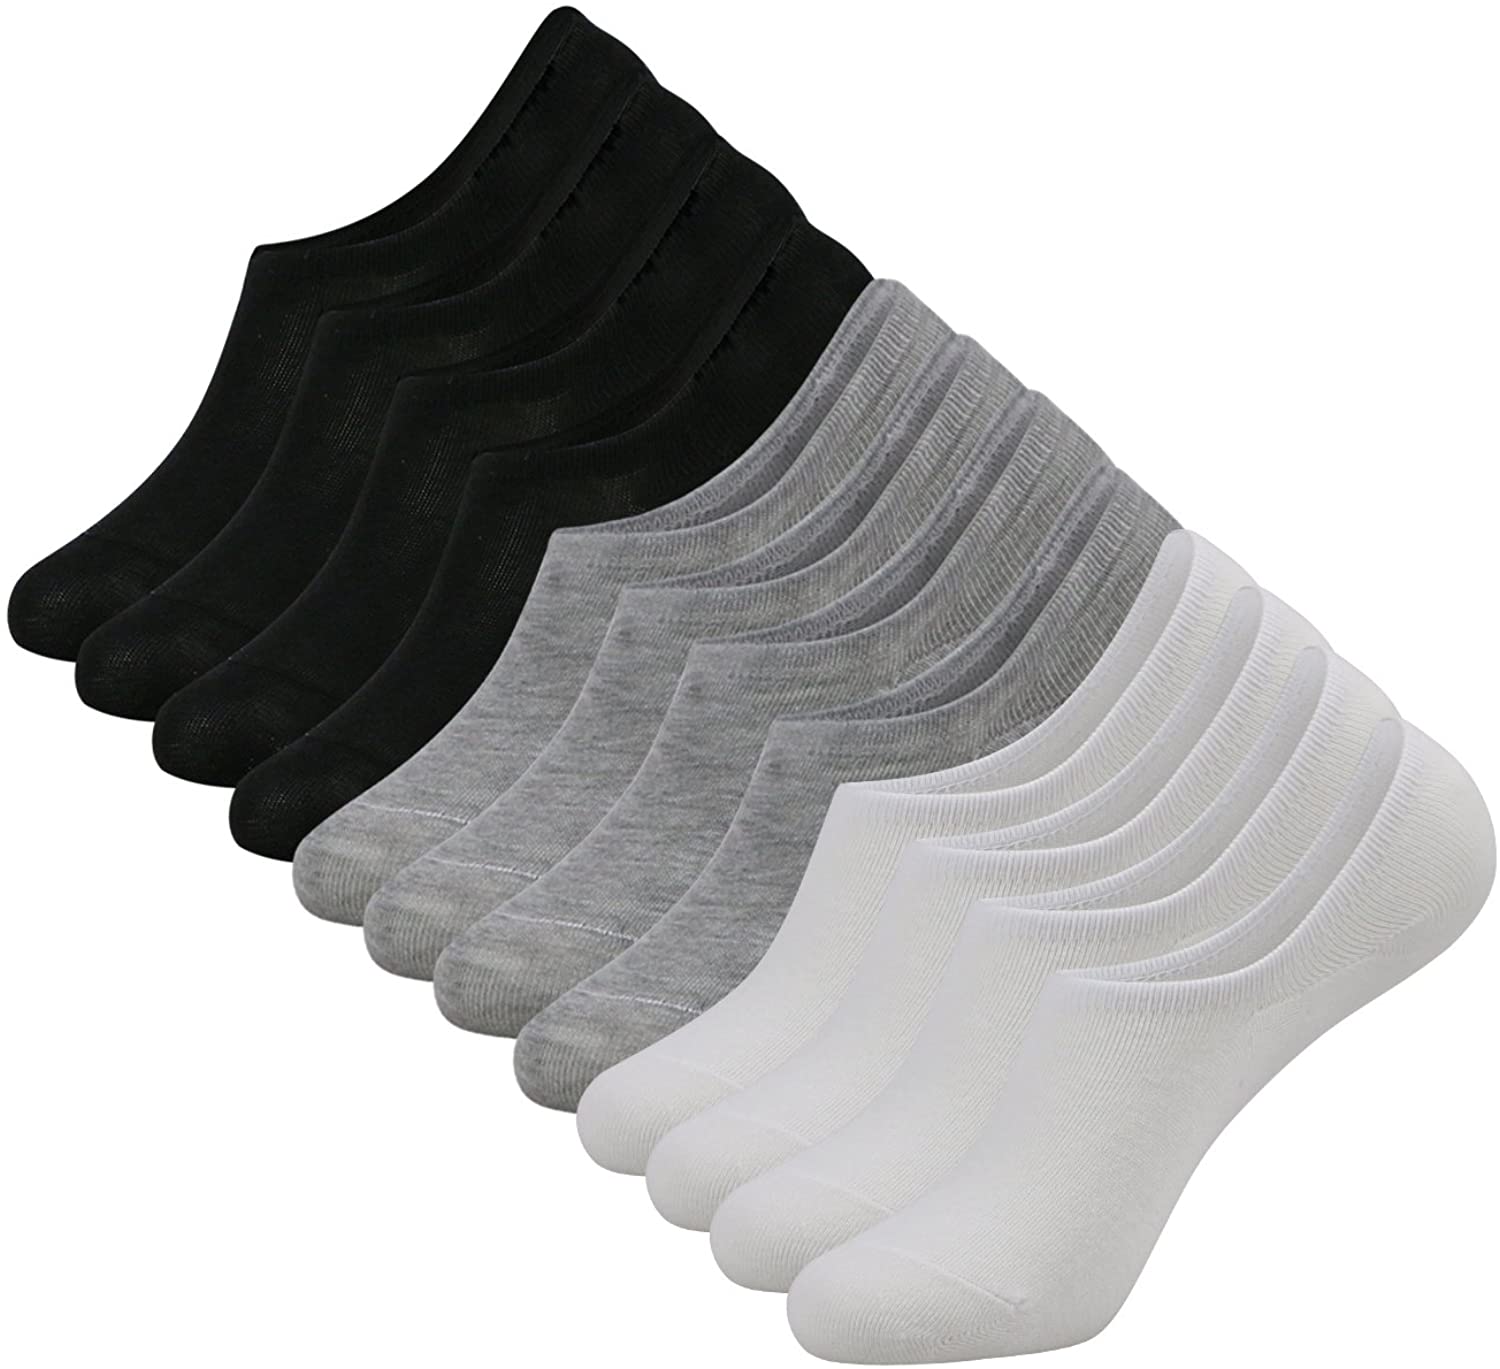 Caudblor 12 Paar Füßlinge Socken Damen Herren Unsichtbare Sneaker Söckchen mit Rutschfestem Silkon derselben Unisex, Schwarz/Weiß/Grau